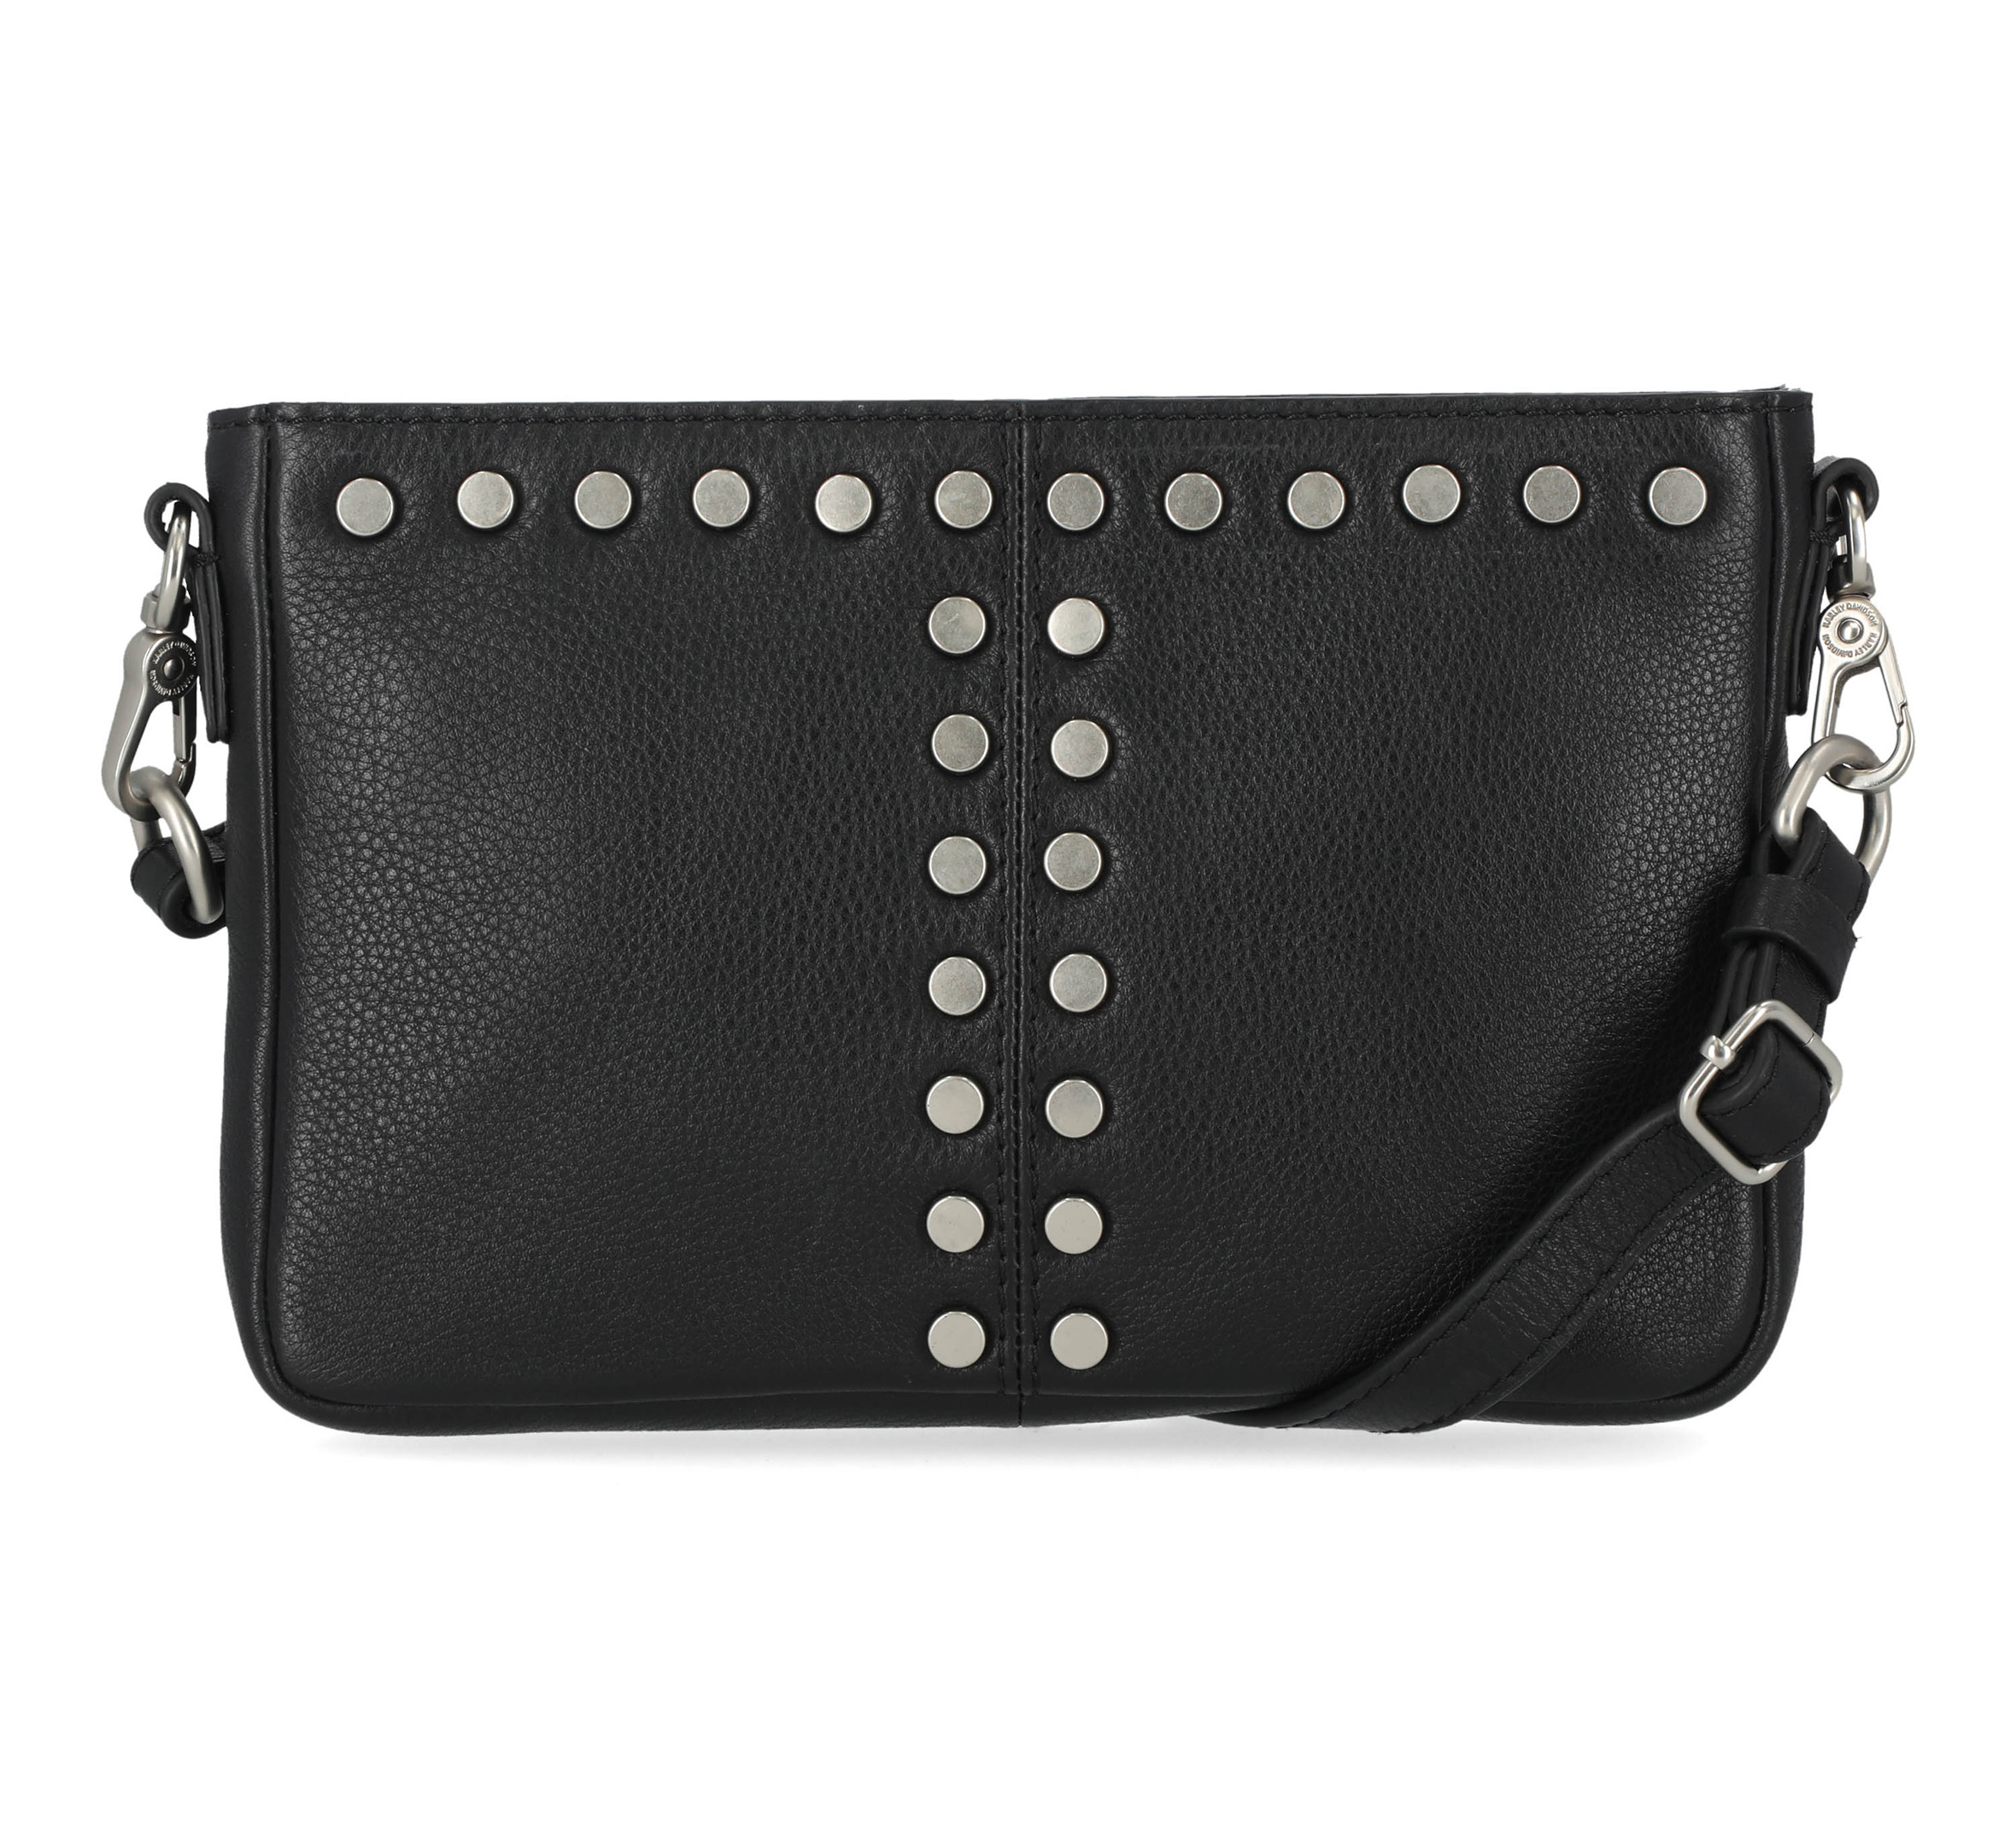 Black Silver Studded Bag, Studded Leather Handbag, Luxurious Tote Bag,  Polka Dot Studded Leather Tote Bag, Polka Dot Leather Shoulder Bag. - Etsy